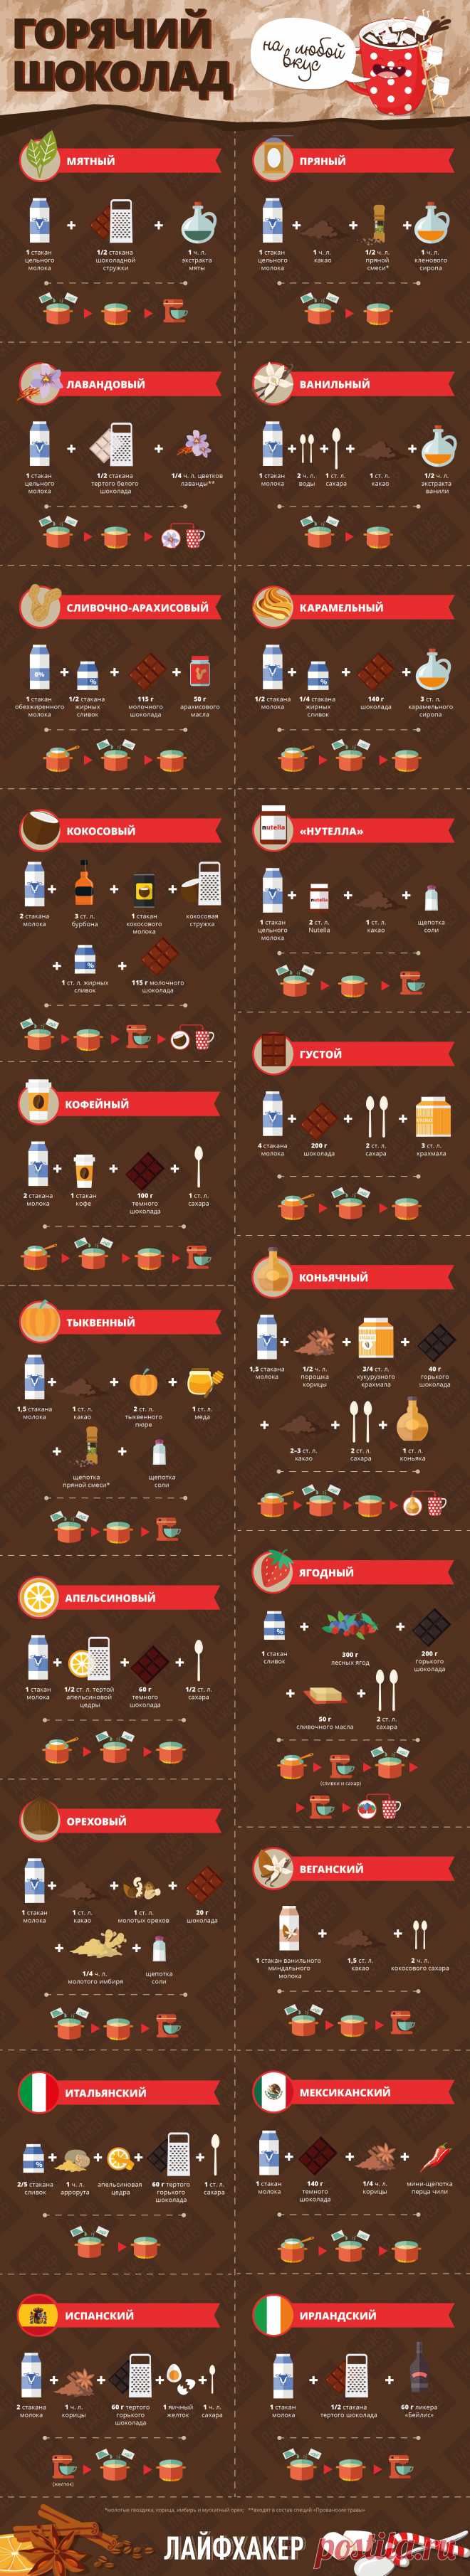 20 рецептов горячего шоколада - Лайфхакер